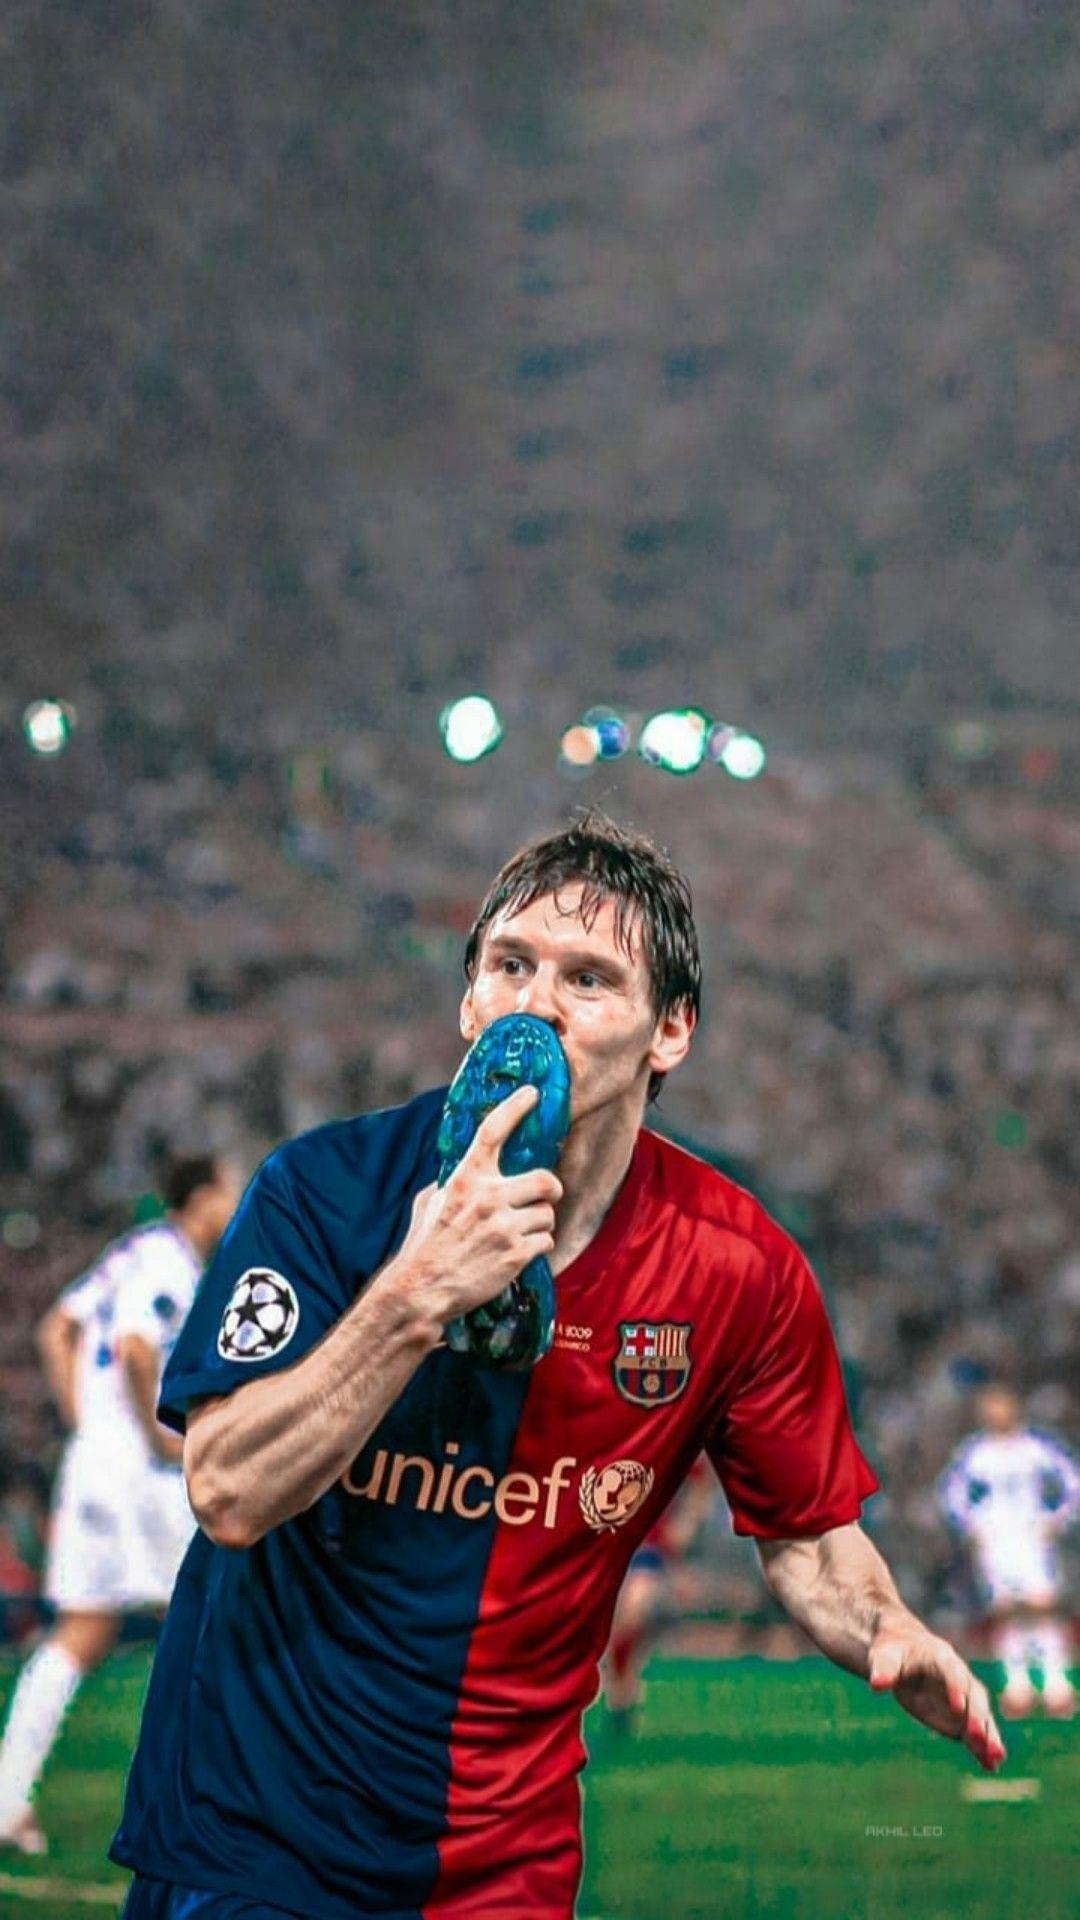 Với Messi 2009 Wallpapers, bạn sẽ trở lại với thời kỳ đỉnh cao của Messi trong năm 2009 và được chiêm ngưỡng những bức ảnh đẹp nhất về anh ấy. Hình nền này là sự lựa chọn tuyệt vời cho những người yêu thích Messi và muốn có một trải nghiệm tuyệt vời trong cuộc sống hàng ngày của họ.